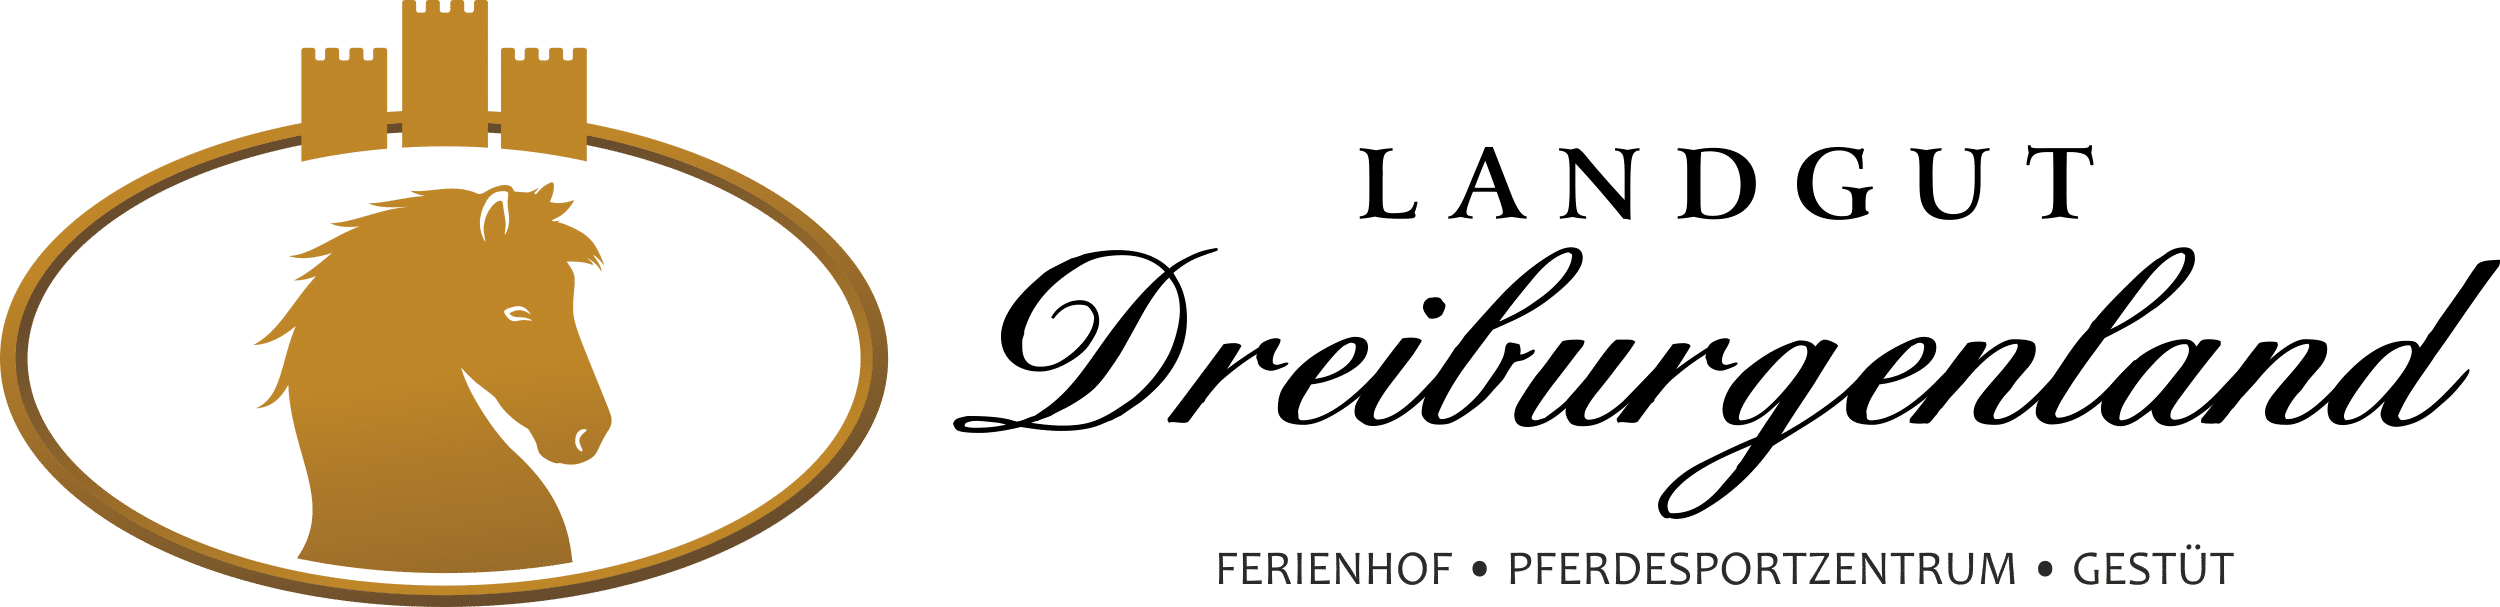 Ferienhof, Pferdesportzentrum und Gestüt "Landgut Dreiburgenland" | AGB - Landgut-Dreiburgenland